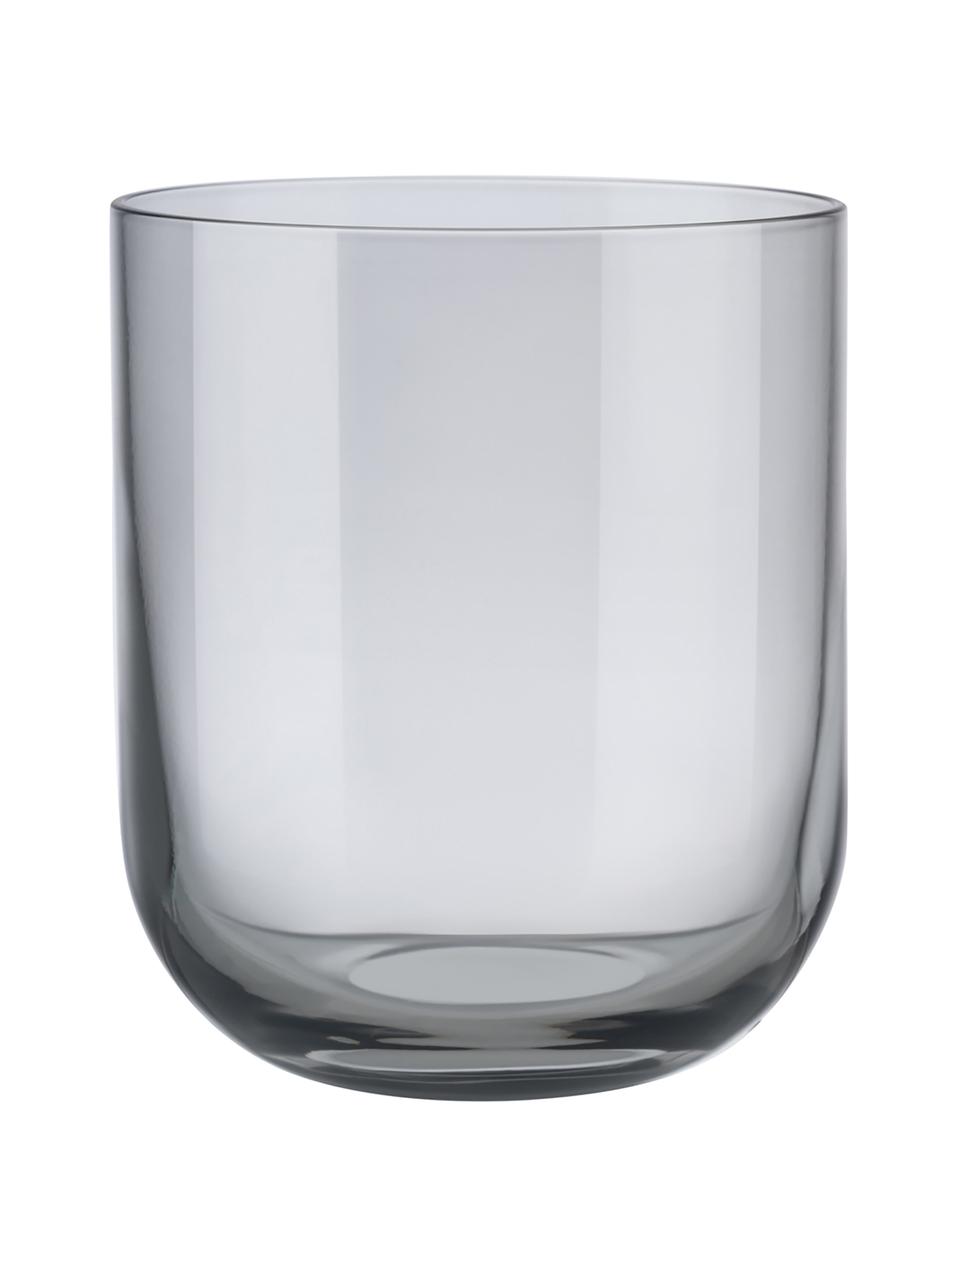 Szklanka Fuum, 4 szt., Szkło, Szary, transparentny, Ø 8 x W 9 cm, 300 ml